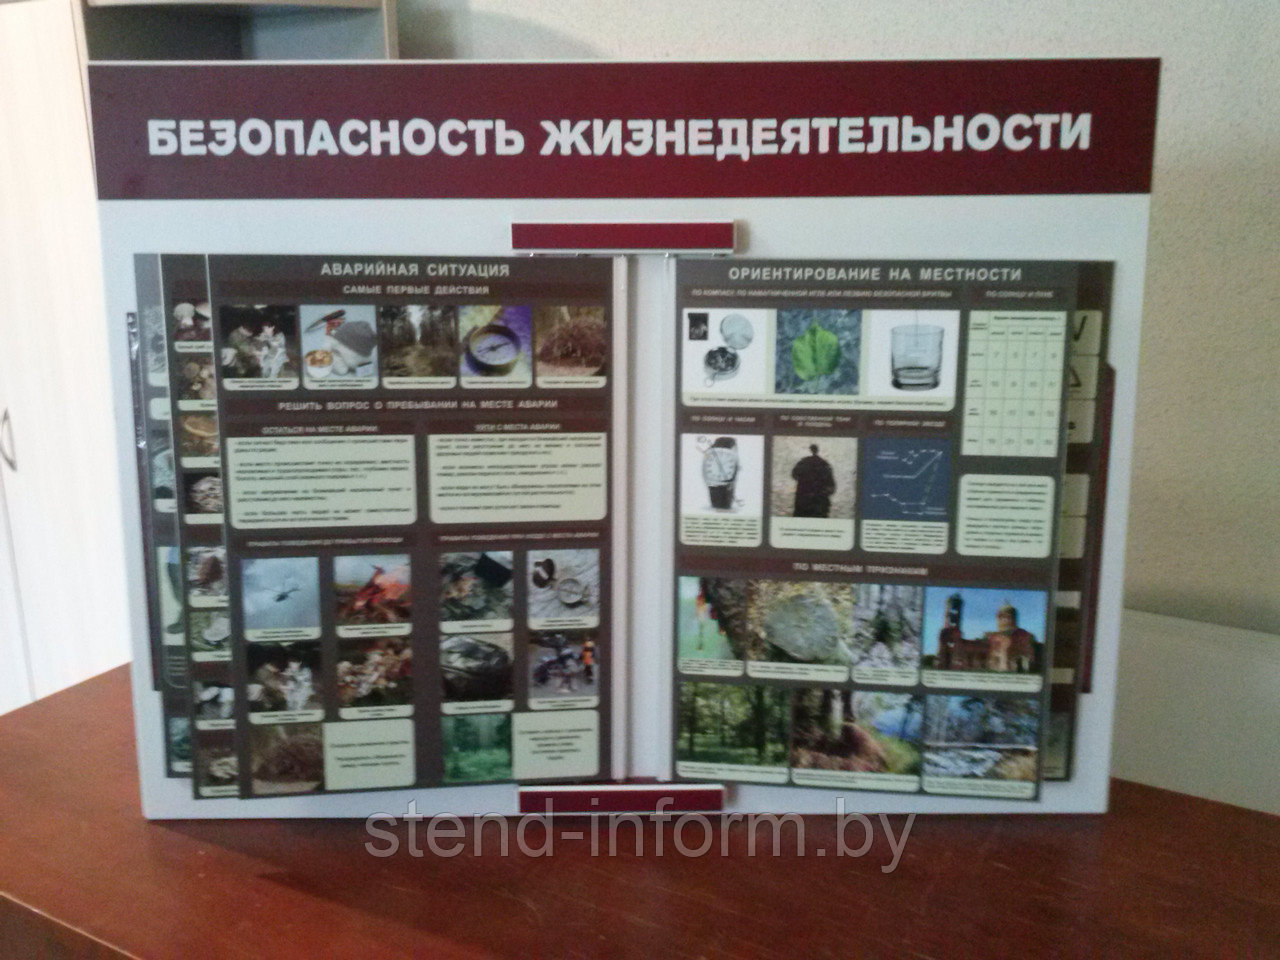 Стенд-книга по ОБЖ  "Основы безопасности жизнедеятельности" р-р 80*60 см, с 10 плакатами А3 формата